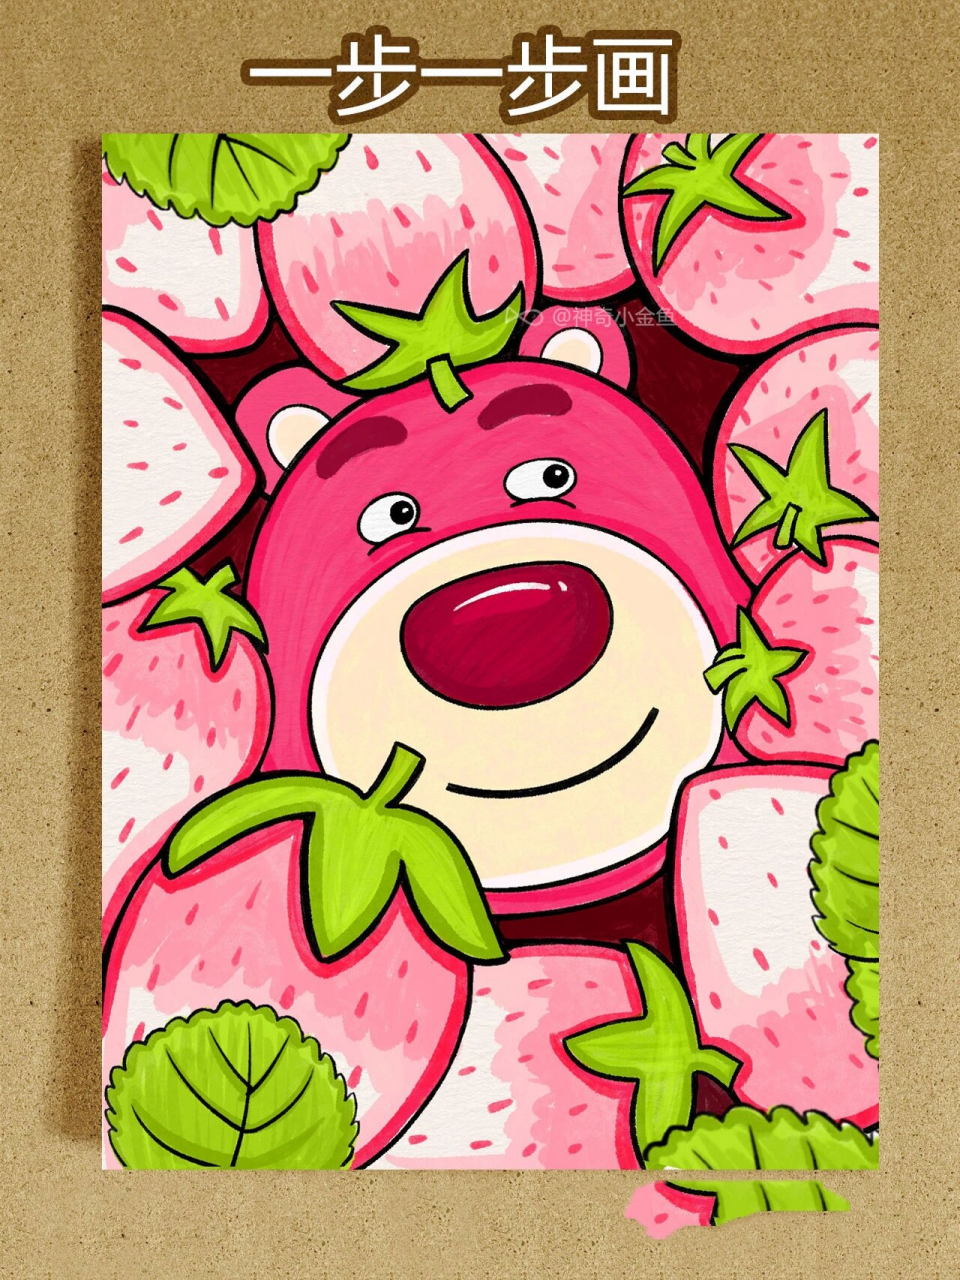 材料:马克笔,水彩纸 这次是草莓熊,快快草莓填满